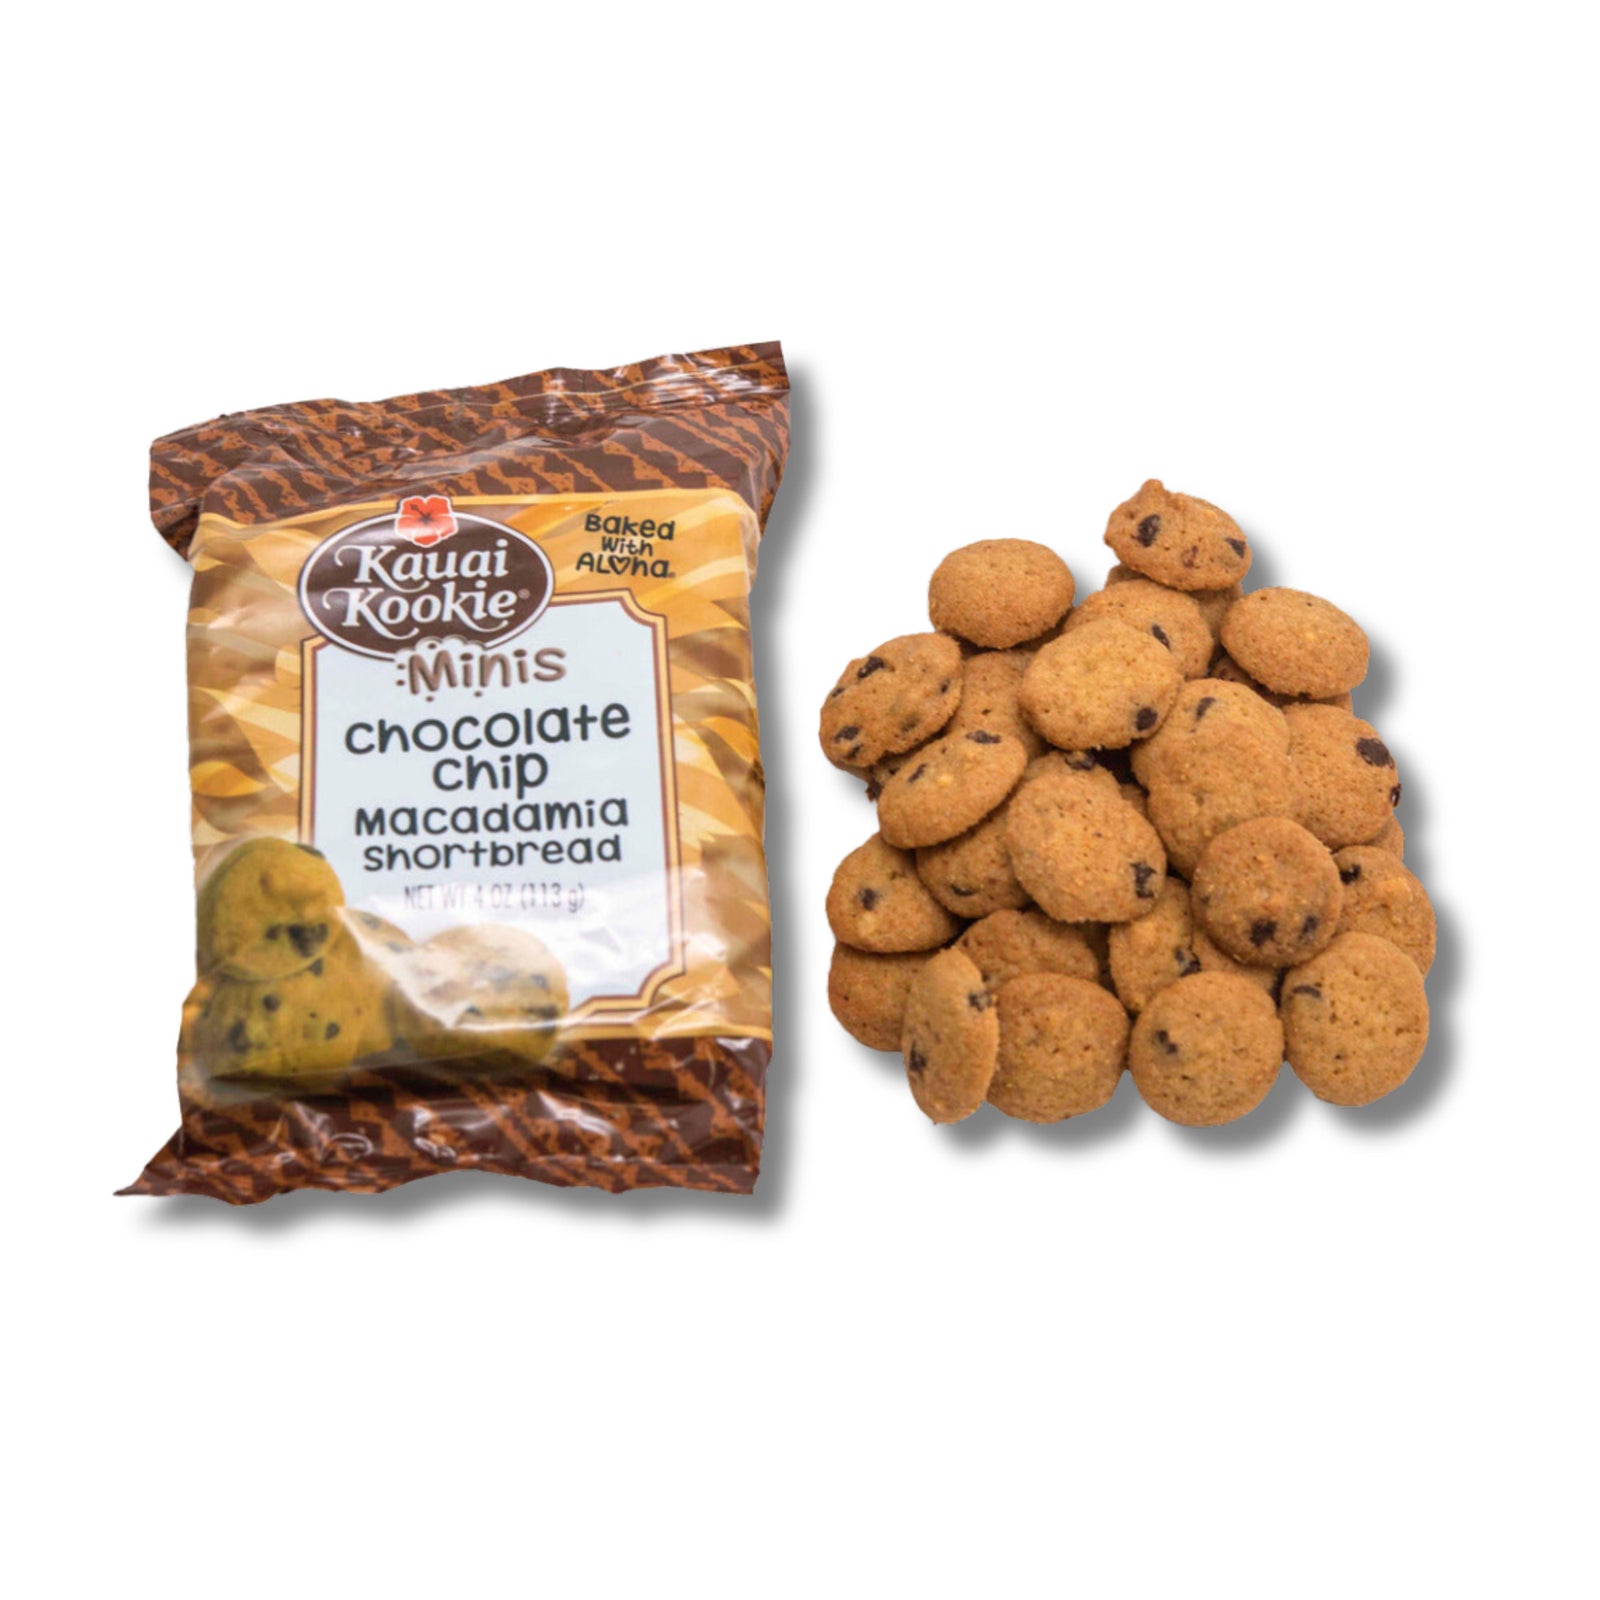 Pop-Up Mākeke - Kauai Kookie - Chocolate Chip Macadamia Nut Mini Cookies - 4oz